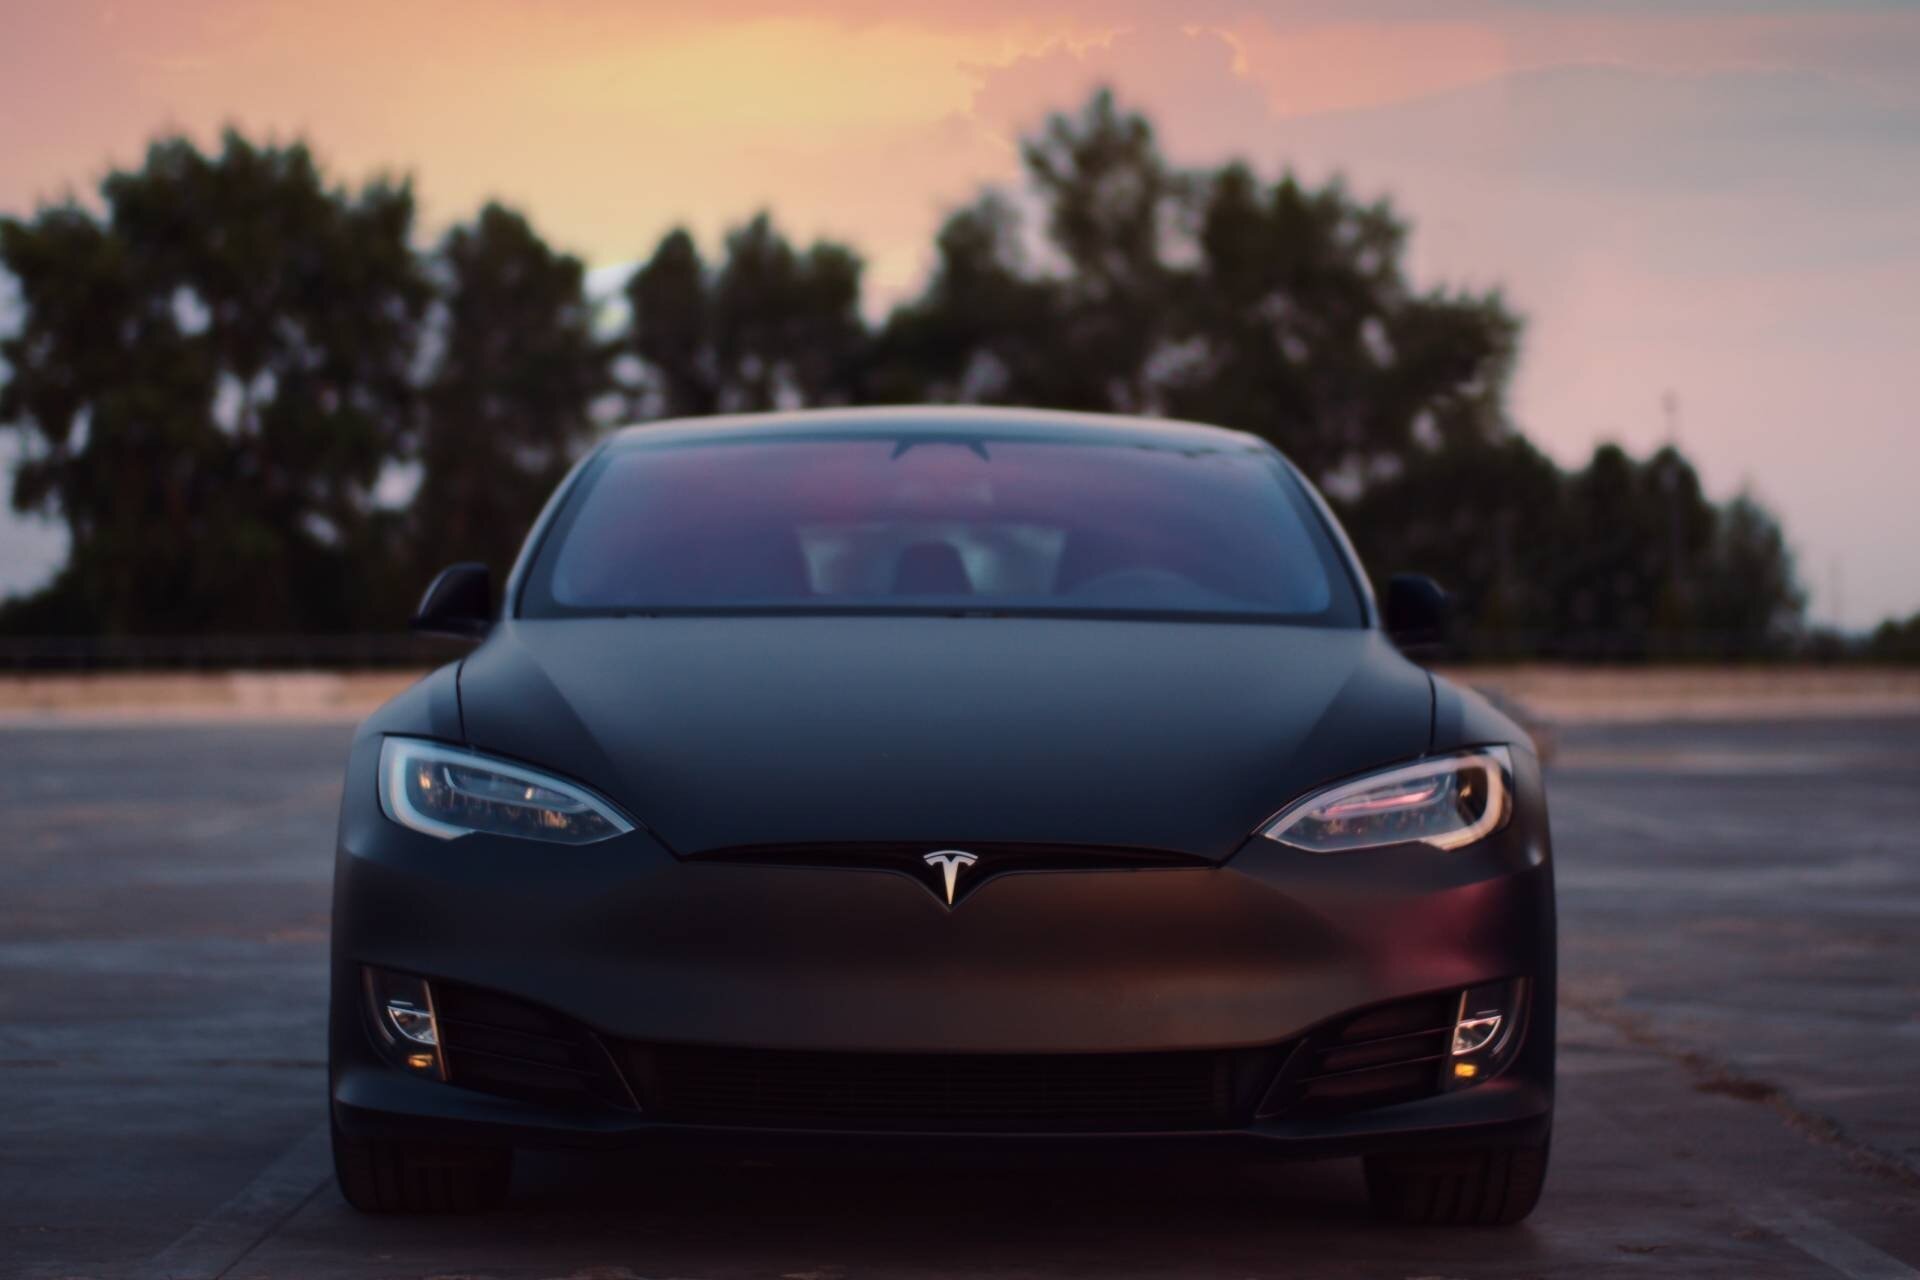 Η Tesla θα αναβαθμίσει μέσω software update πάνω από 2 εκατομμύρια αυτοκίνητα εξαιτίας προβλημάτων στο Autopilot